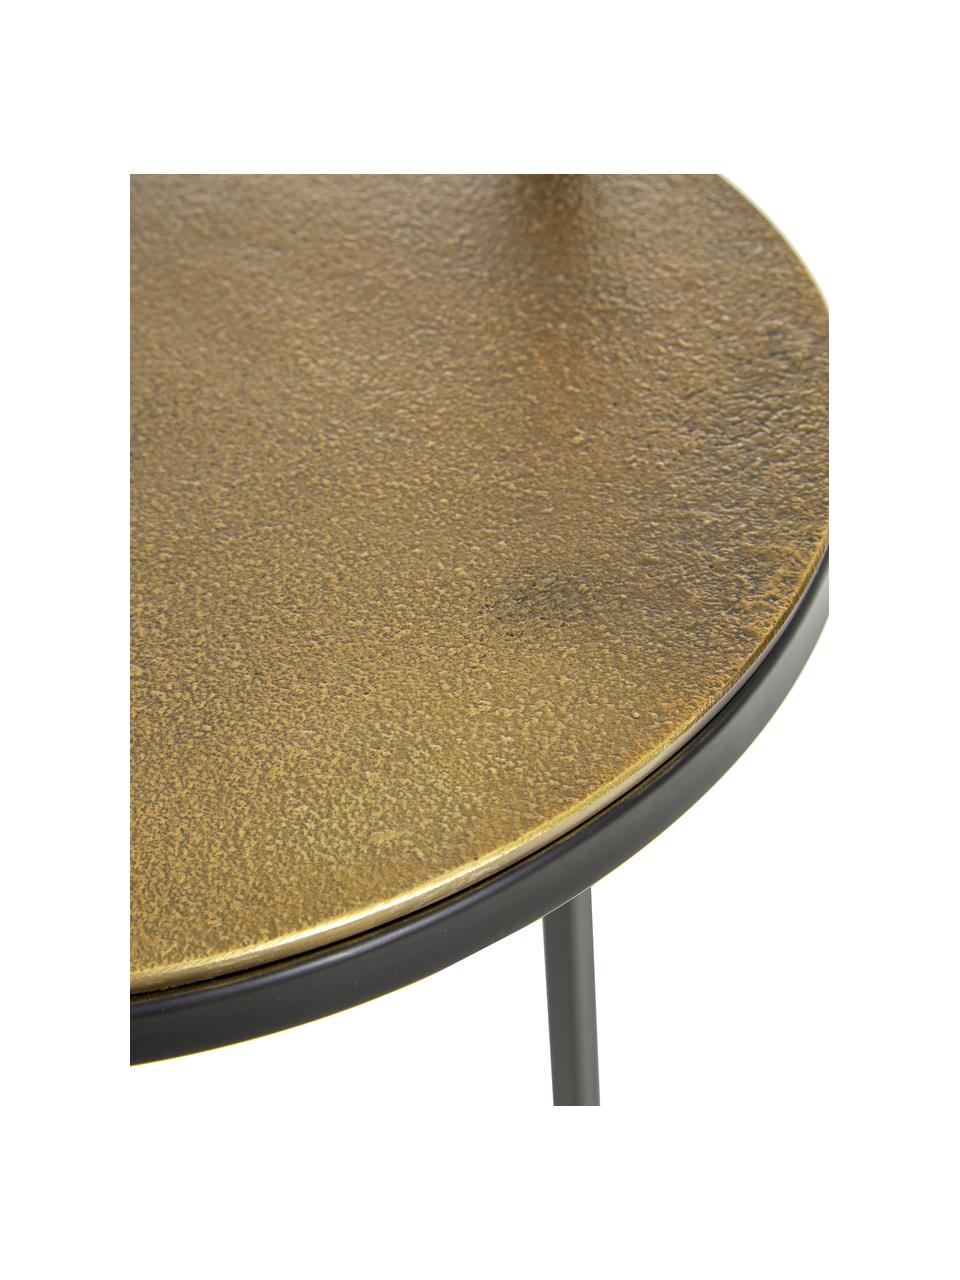 Runder Beistelltisch Circle aus Metall, Tischplatte: Metall, beschichtet, Gestell: Metall, pulverbeschichtet, Goldfarben, Ø 36 x H 66 cm